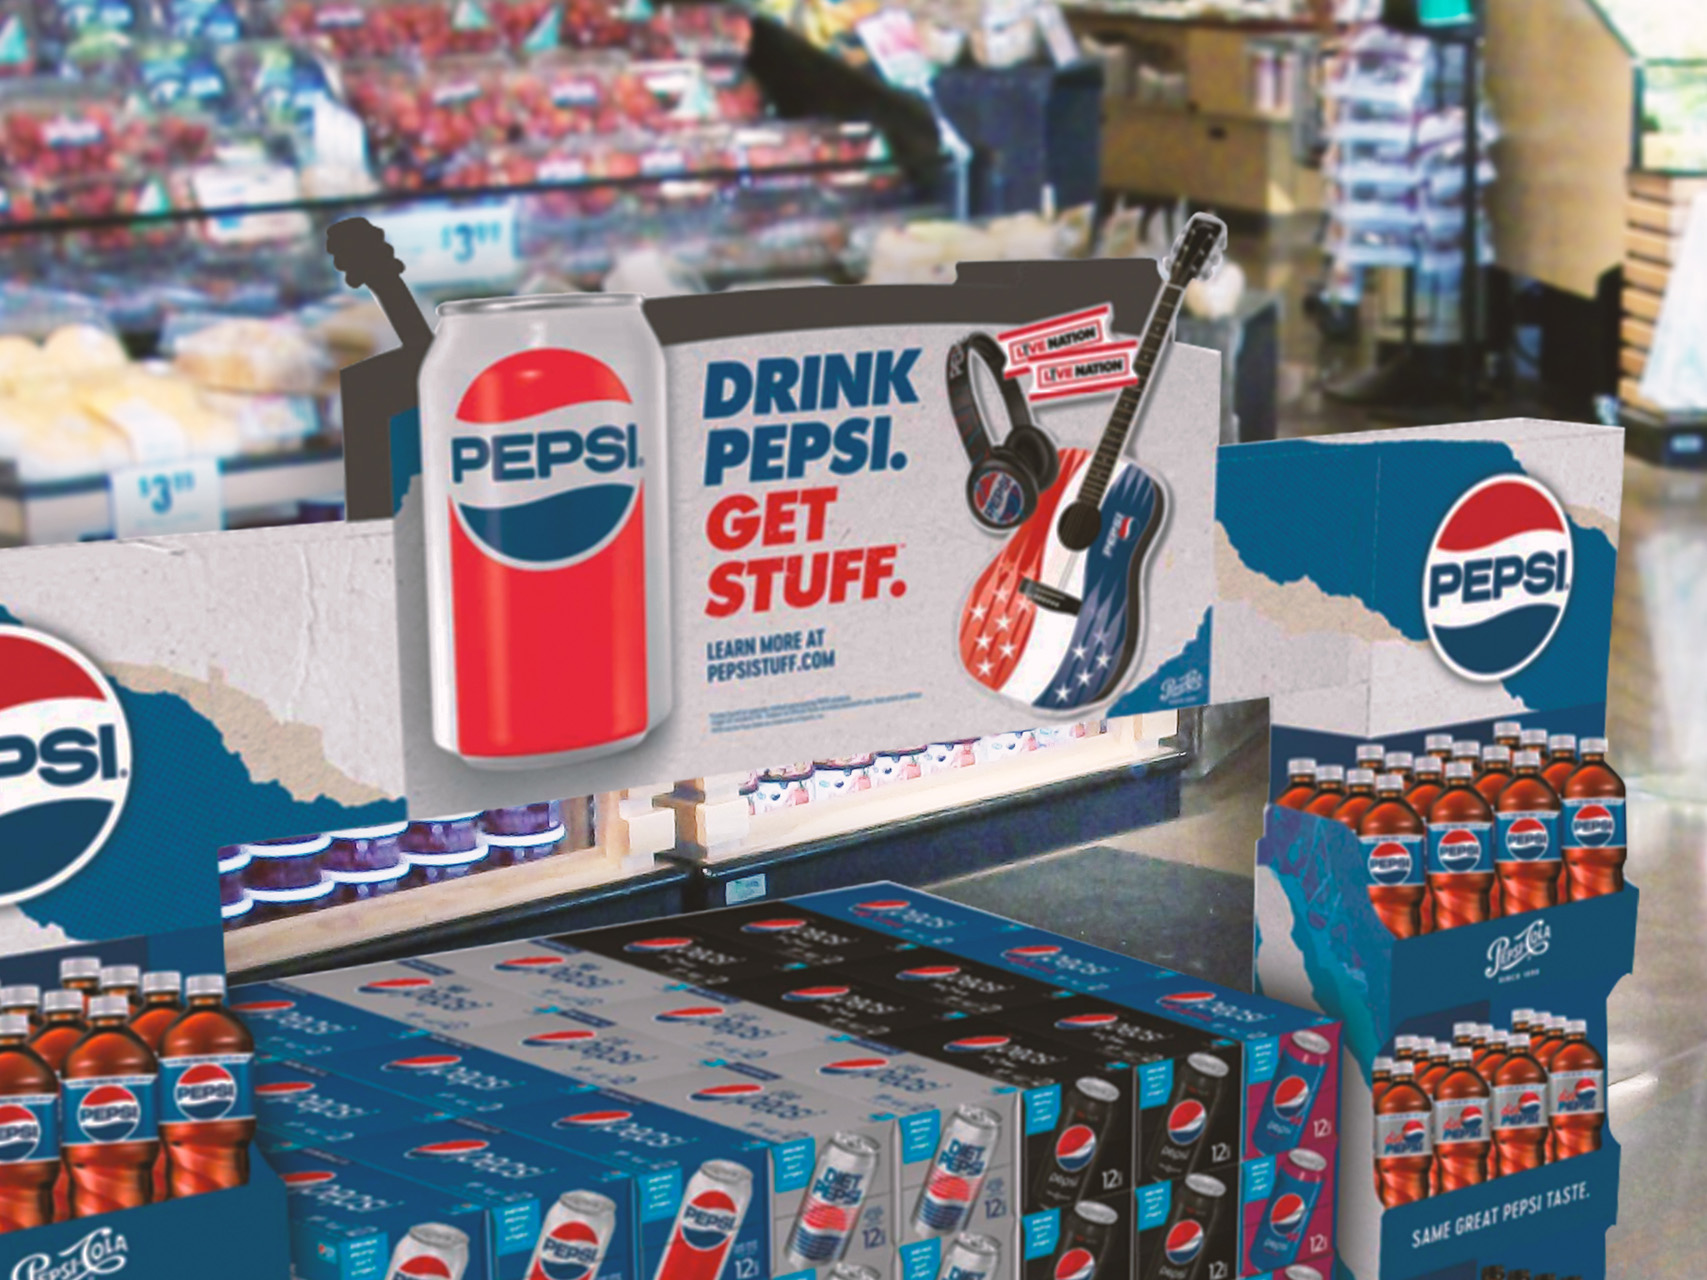 Live Nation For Brands - Pepsi get stuff